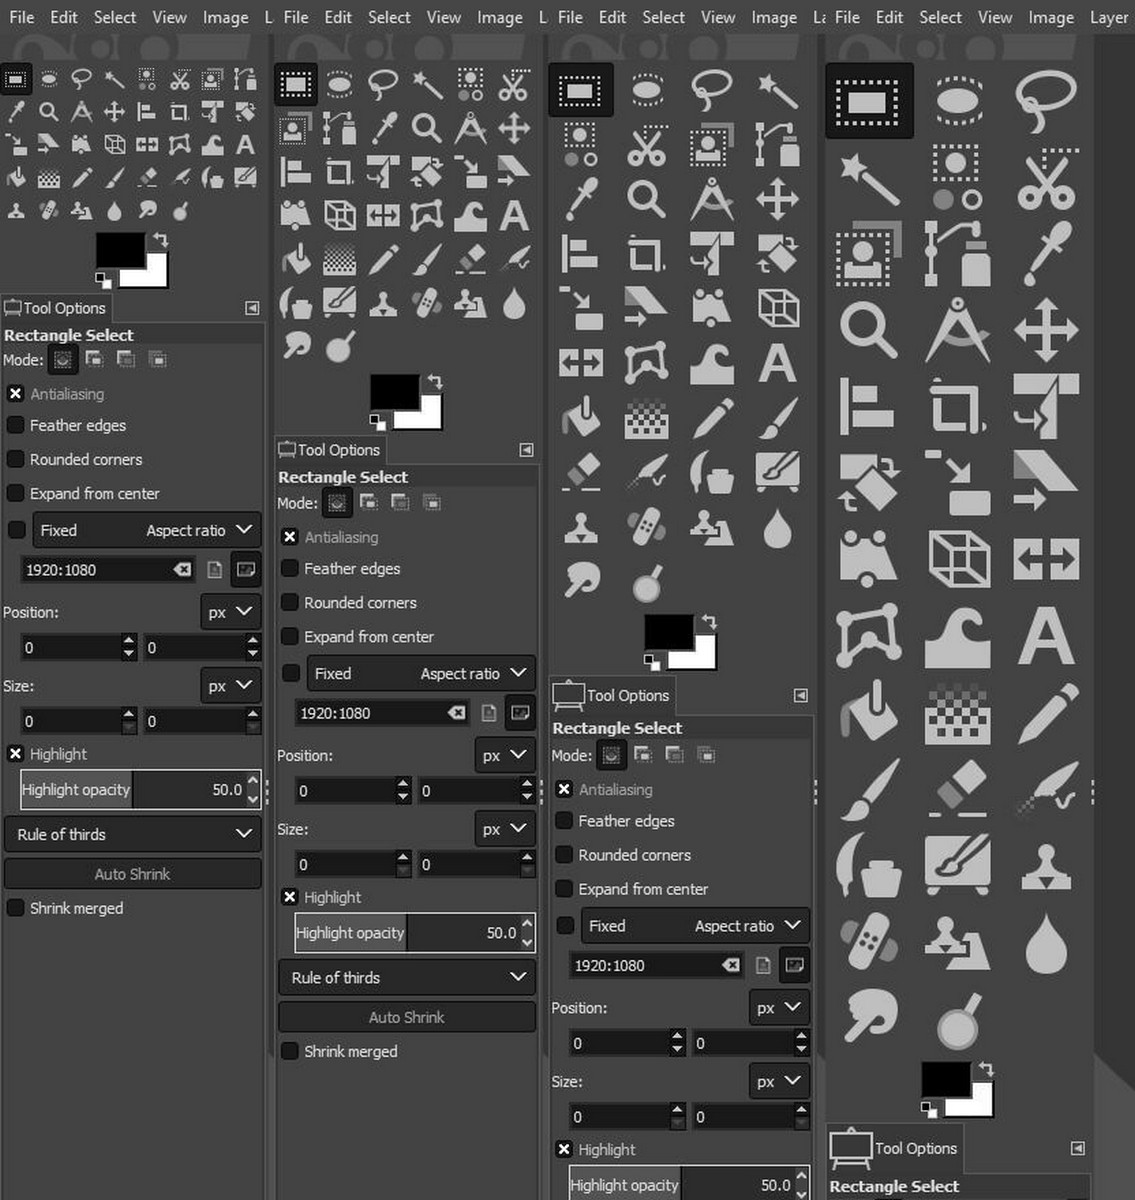 GIMP 2.10 icon sizes